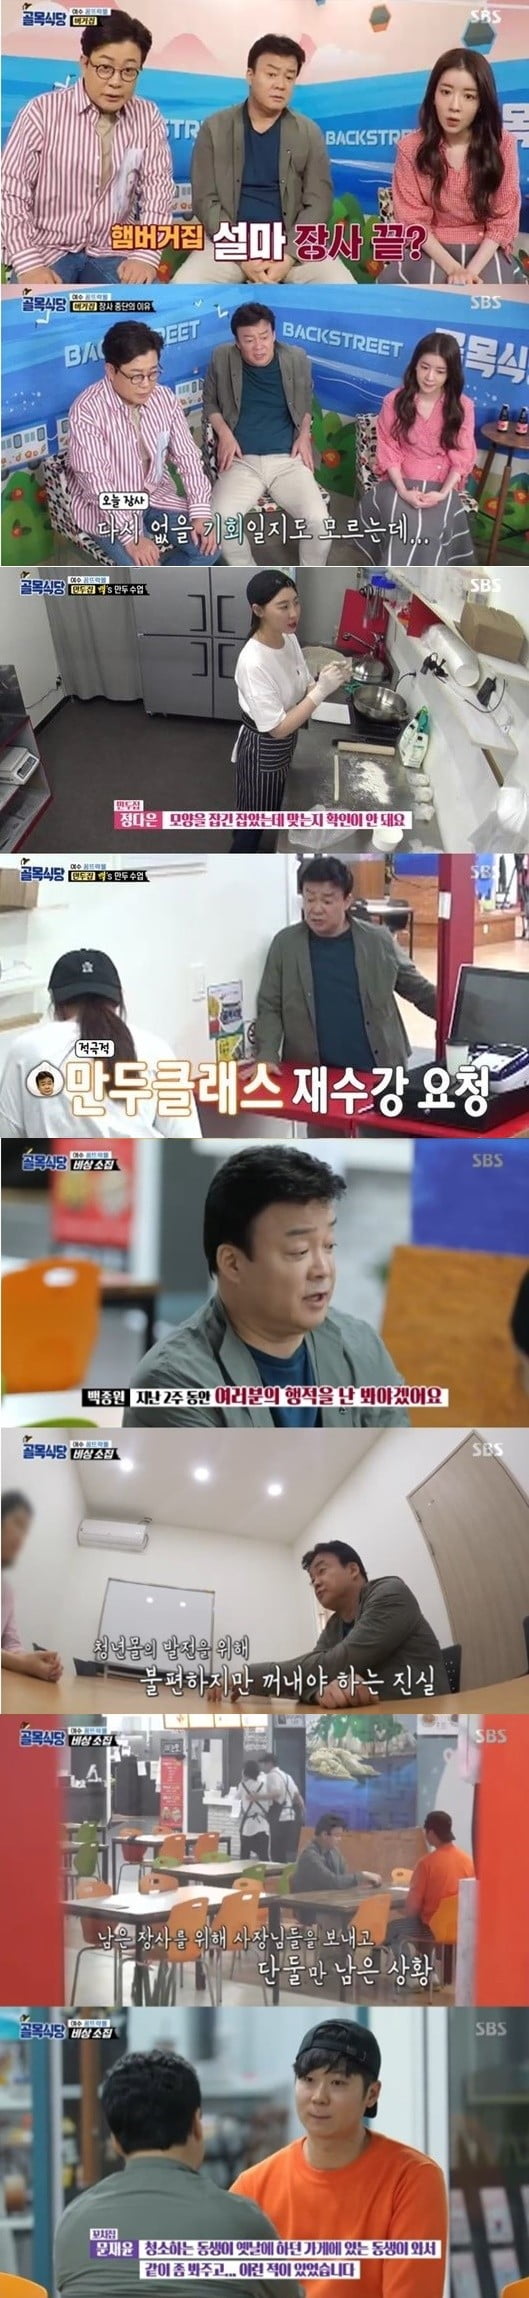 '골목식당' 백종원 일침, 최고의 1분 /사진=SBS 방송화면 캡처